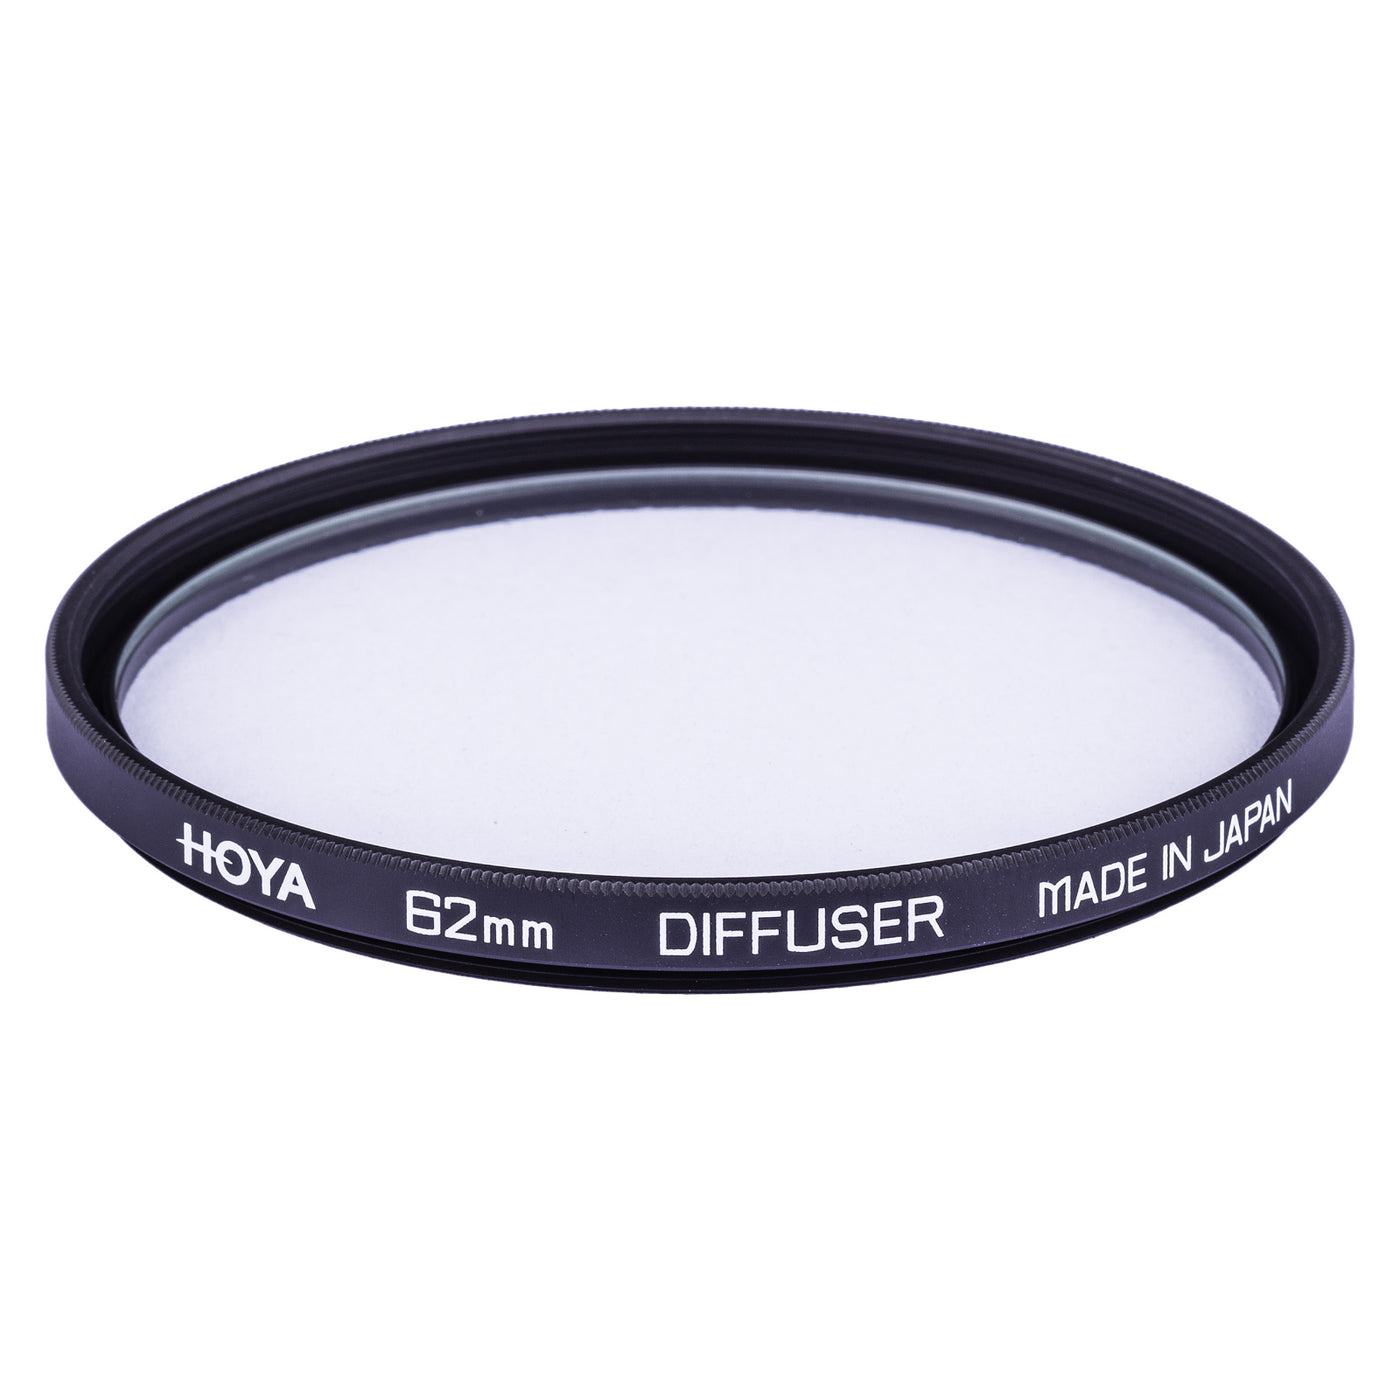 Hoya Diffuser Filter